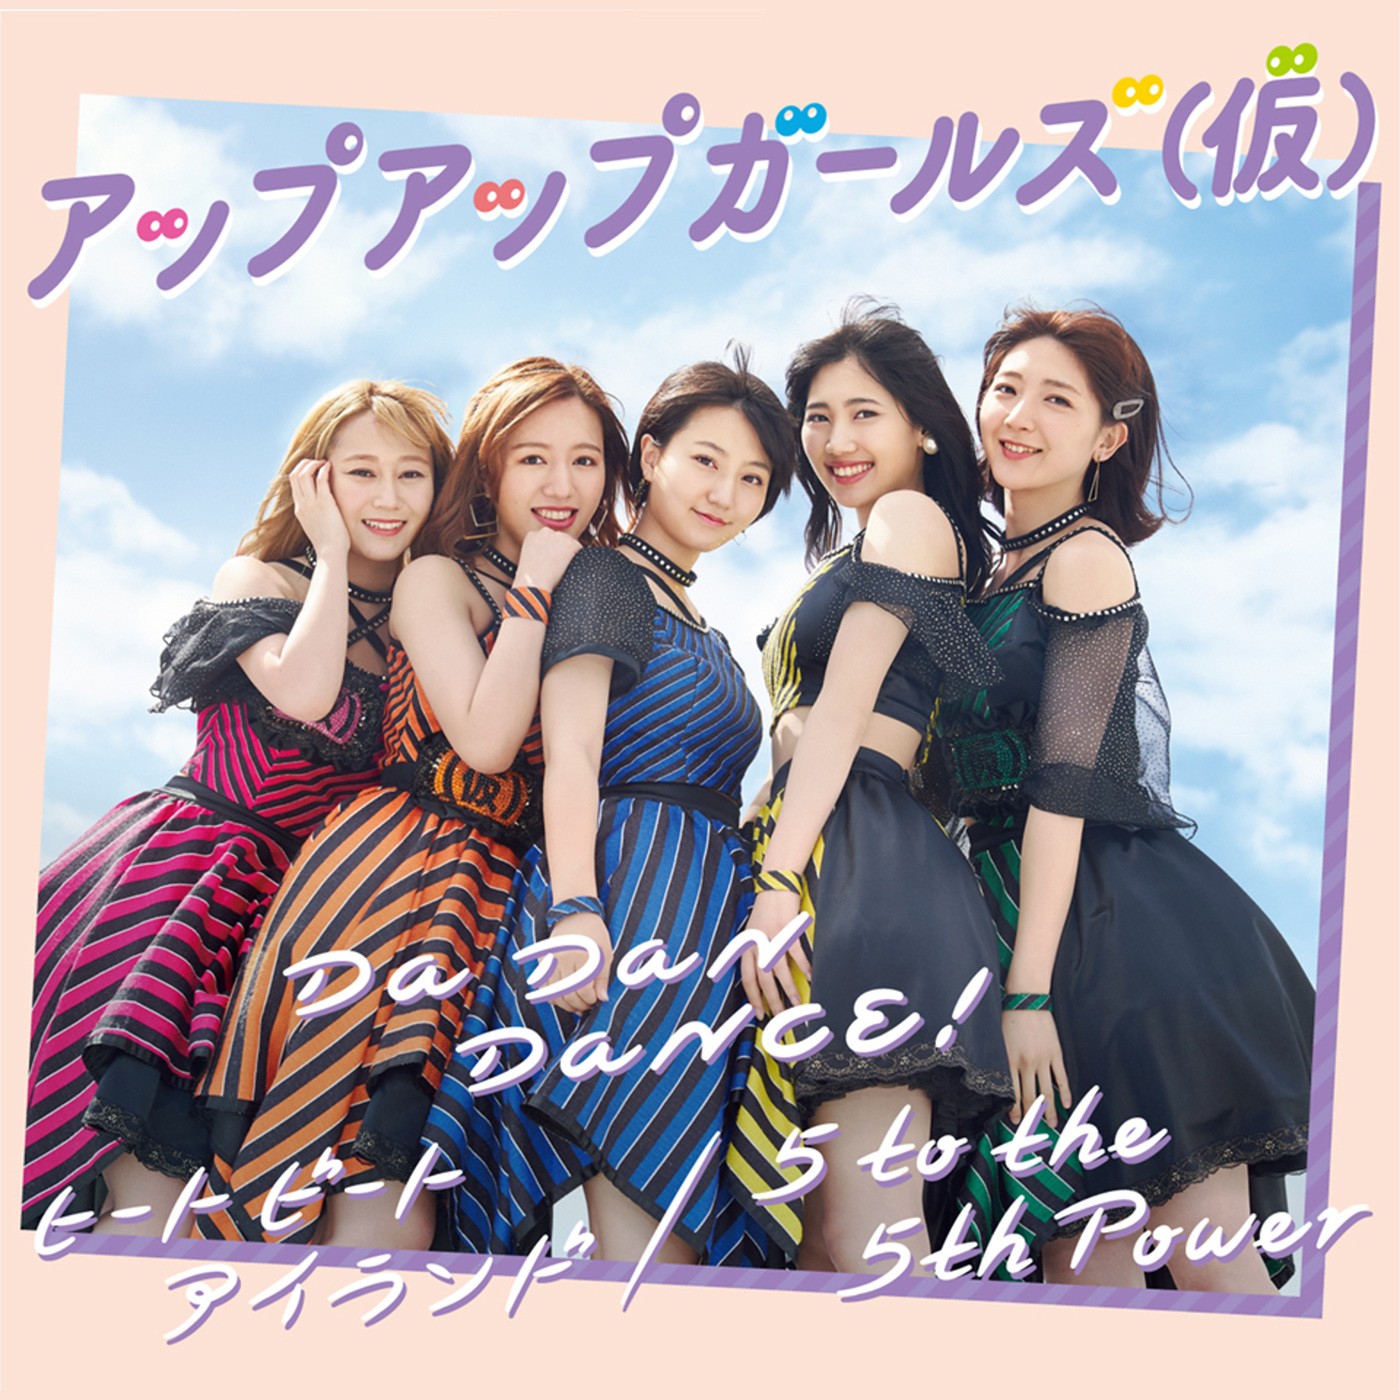 アップアップガールズ(仮) – Da Dan Dance!/ヒート ビート アイランド/5 to the 5th Power [FLAC + MP3 320 / WEB] [2019.06.25]